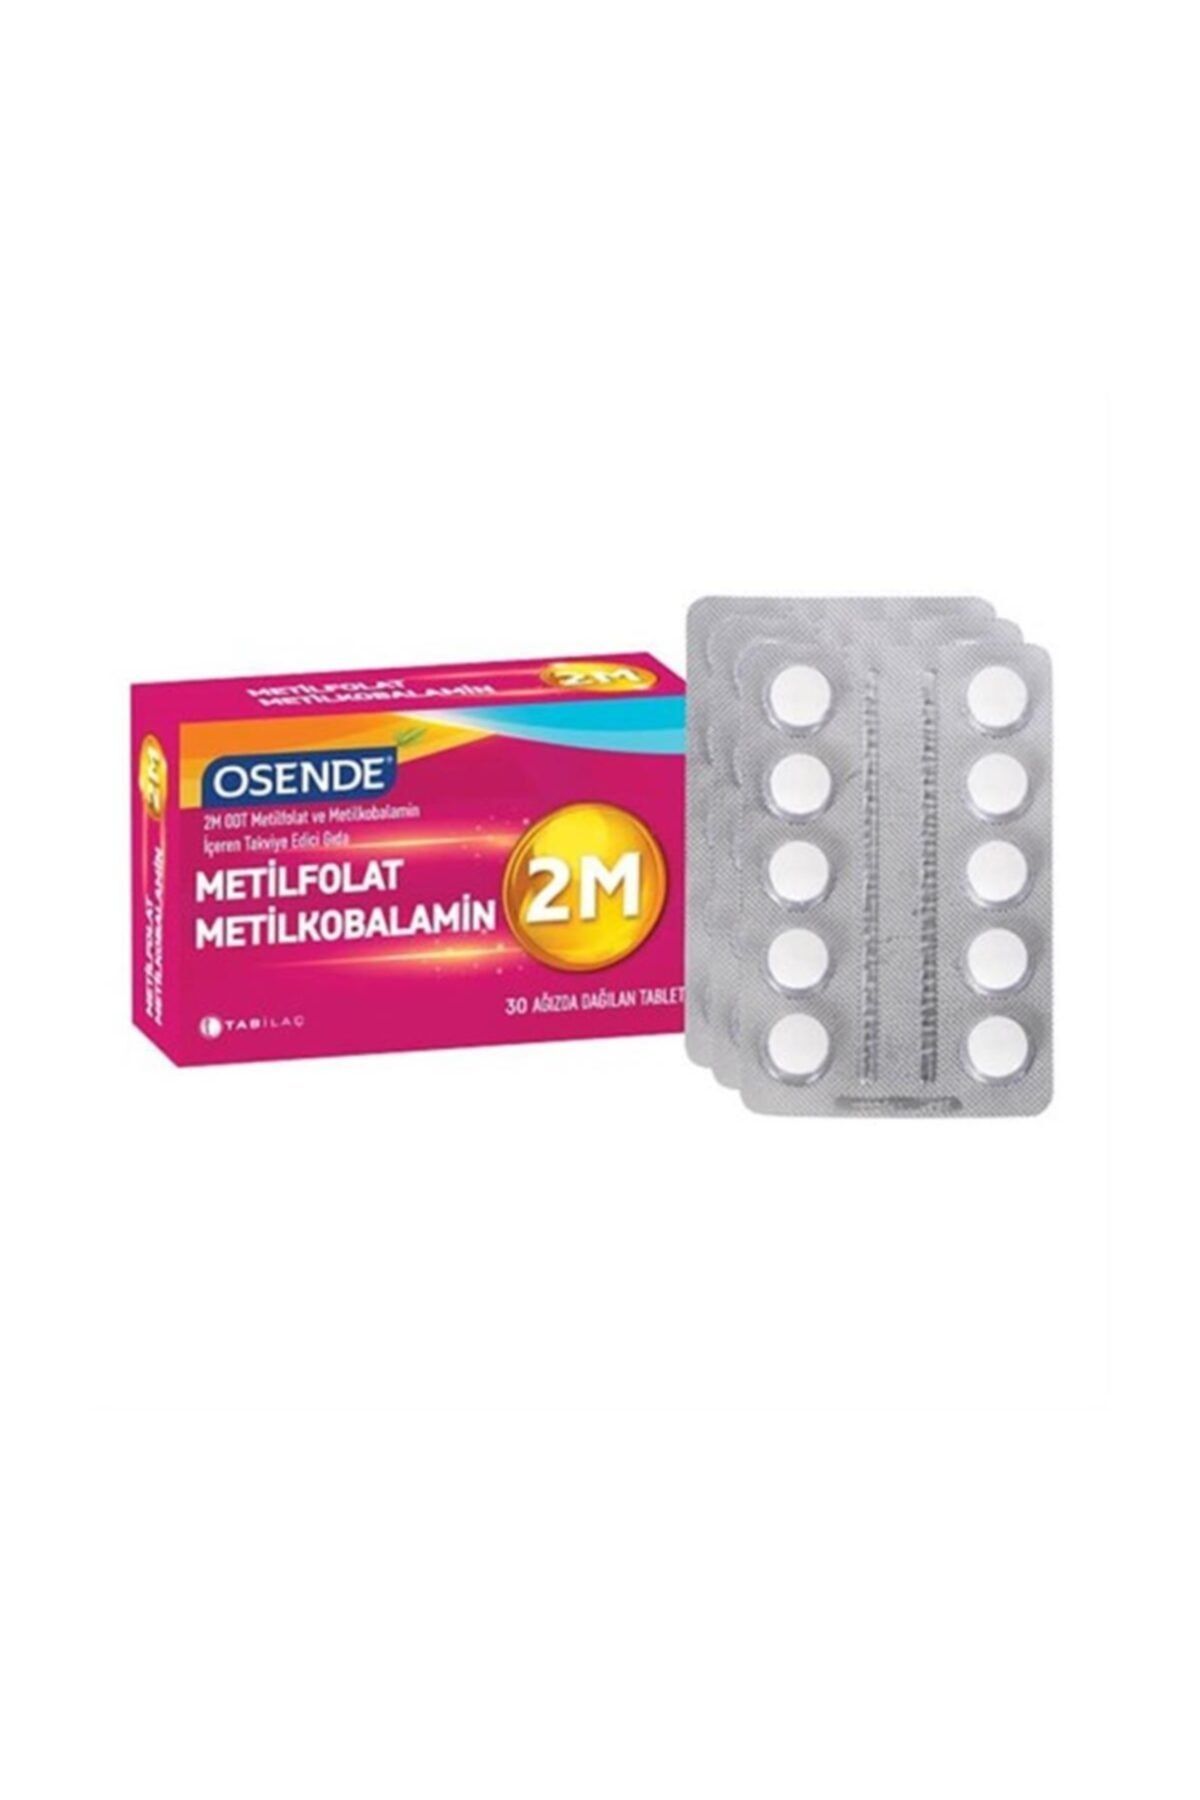 Osende 2m Odt Metilfolat & Metilkobalamin 30 Ağızda Dağılan Tablet